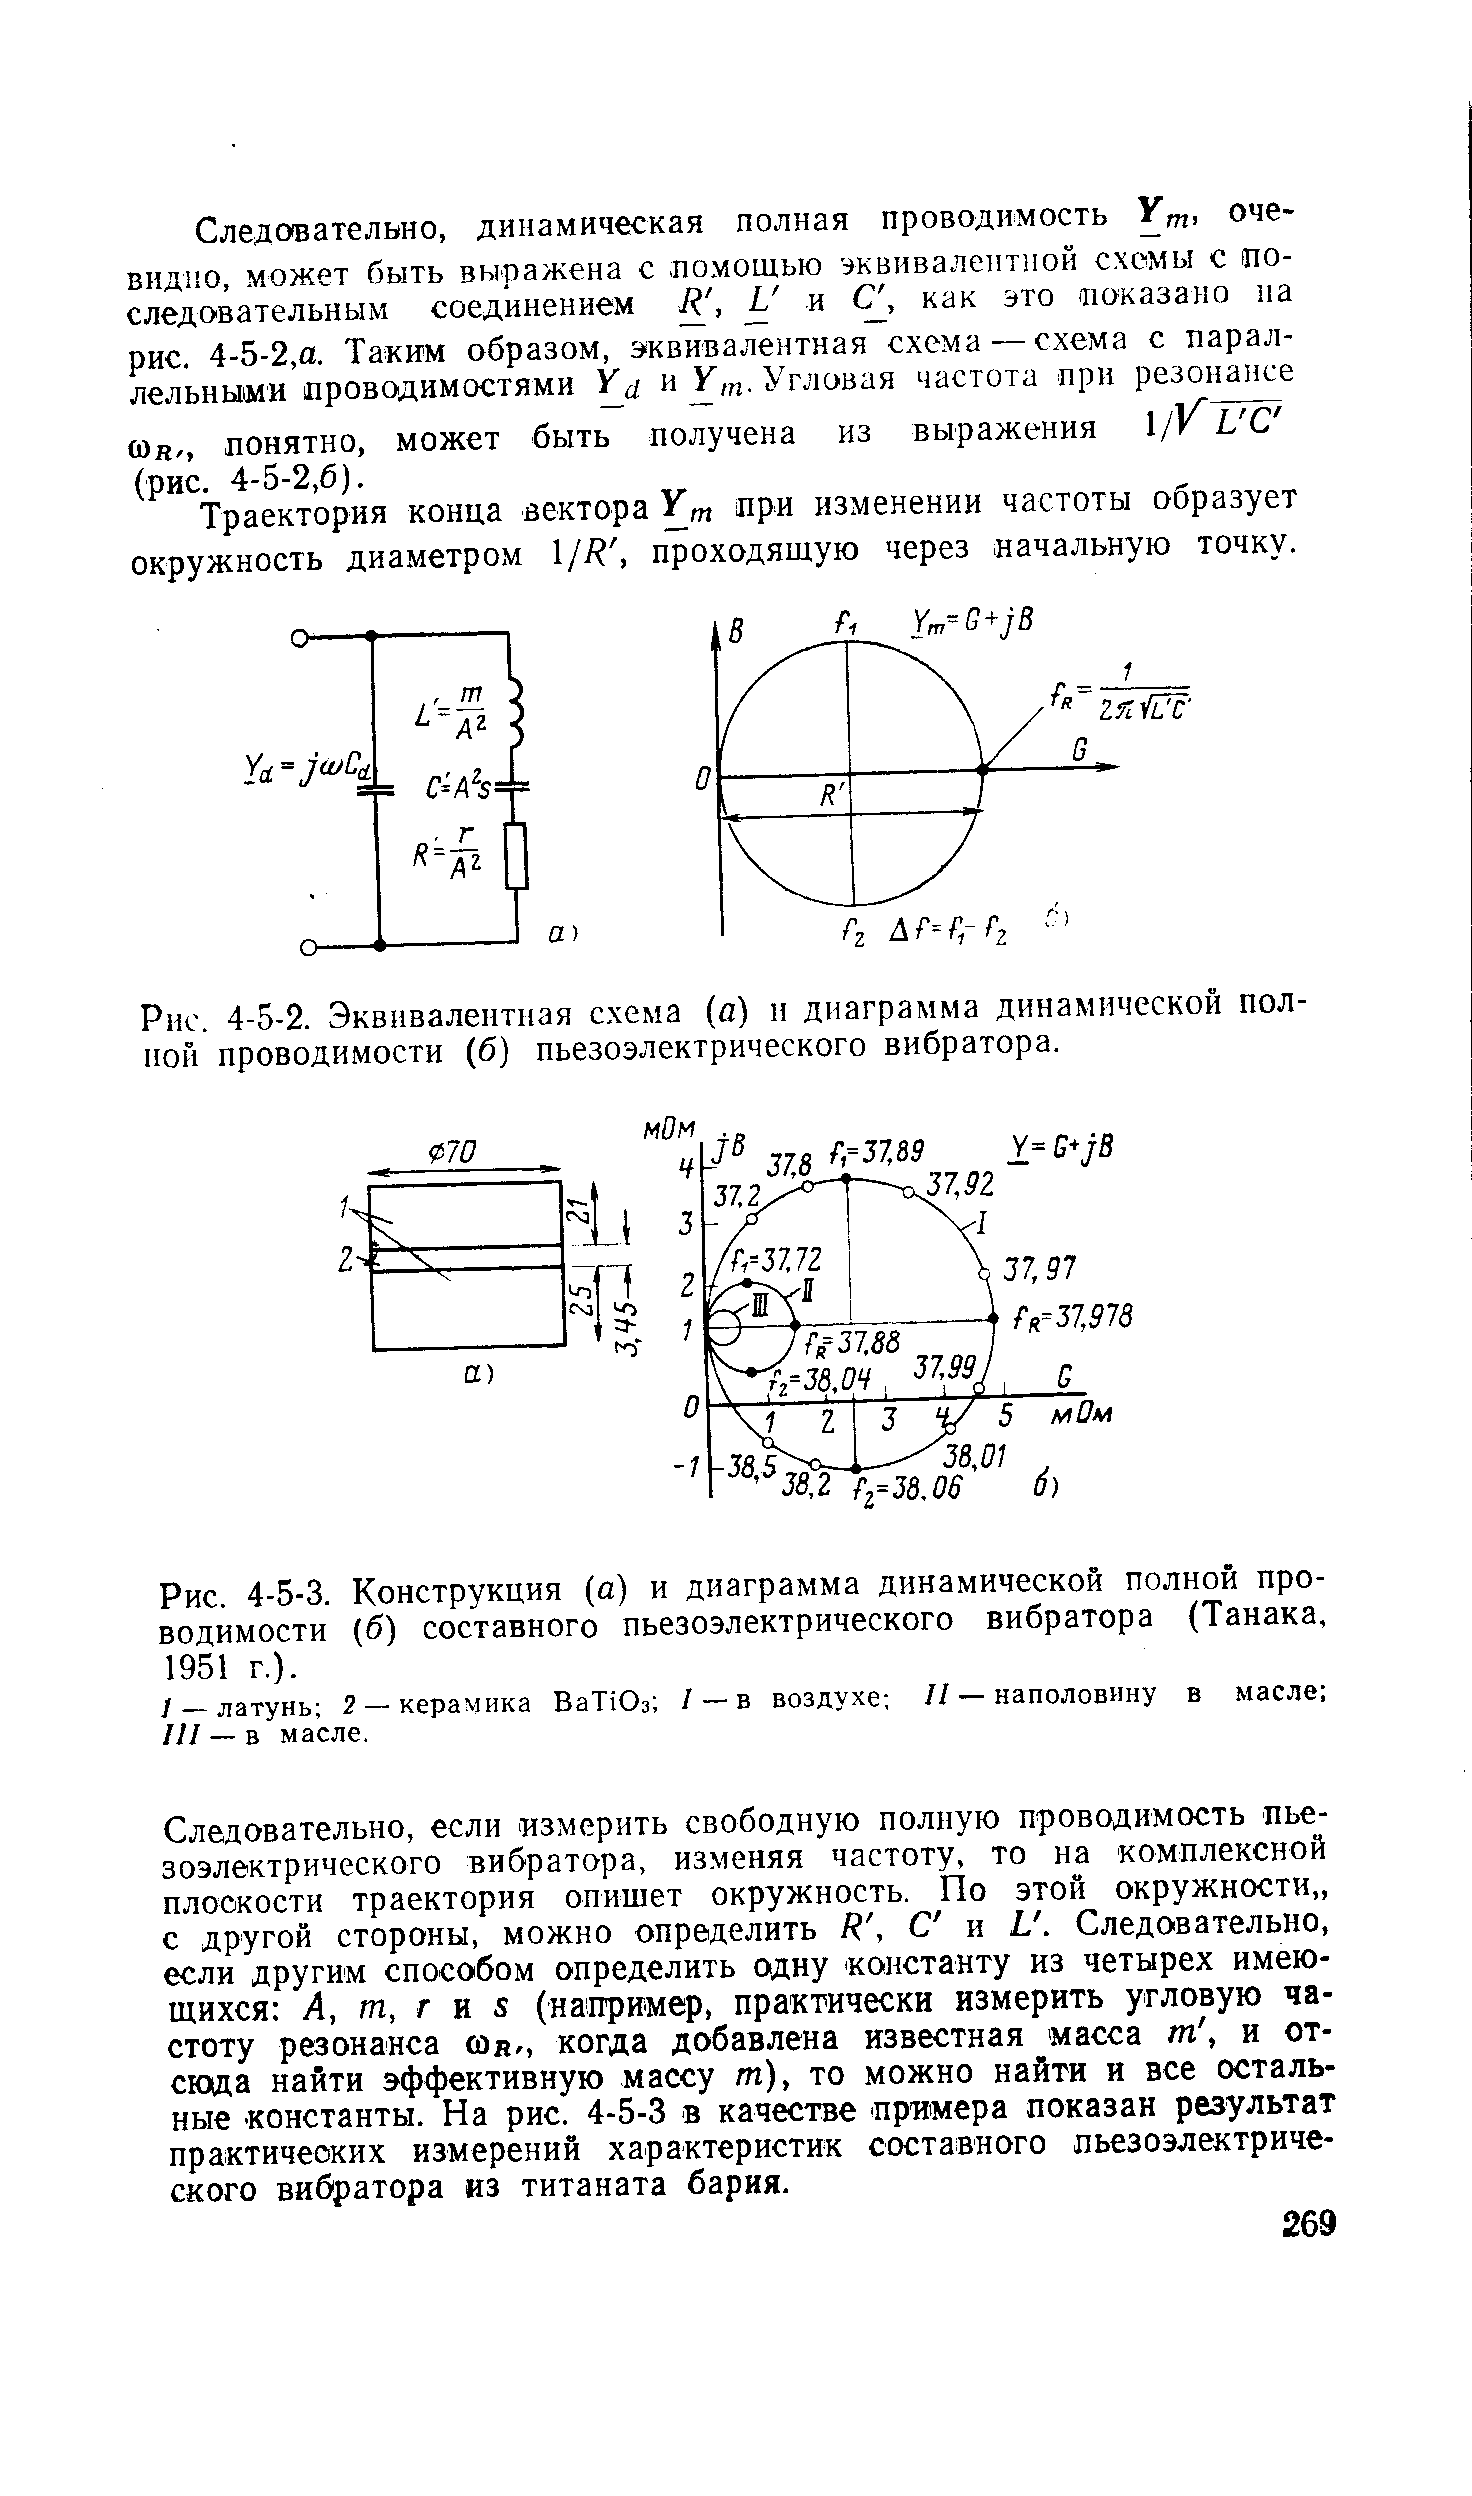 Рис. 4-5-2. Эквивалентная схема (а) и диаграмма динамической <a href="/info/341789">полной проводимости</a> (б) пьезоэлектрического вибратора.
